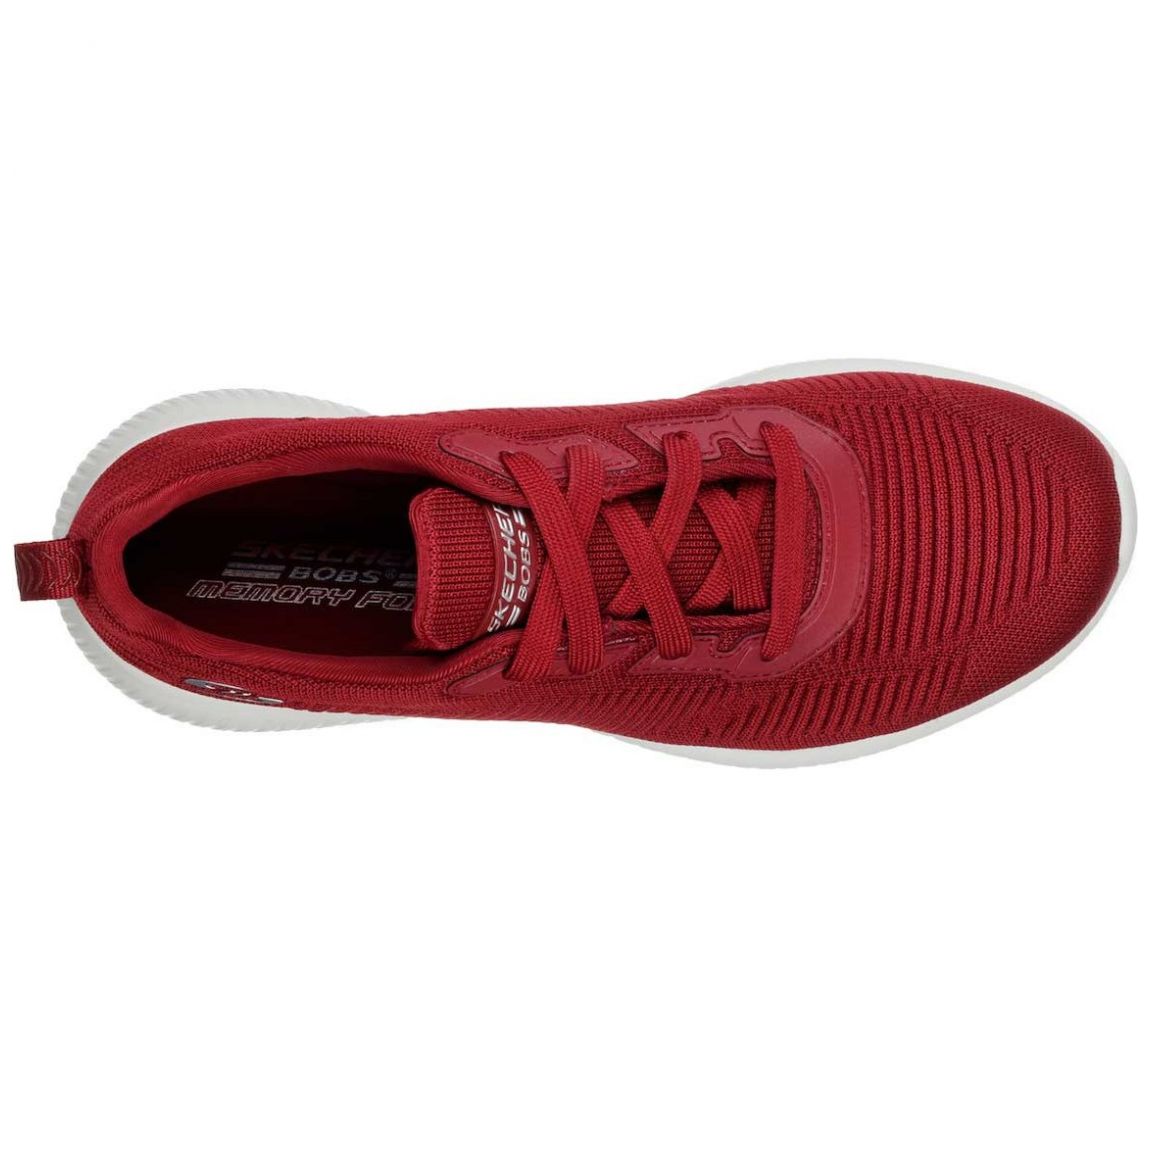 Tenis Textil con Agujeta Rojo Skechers